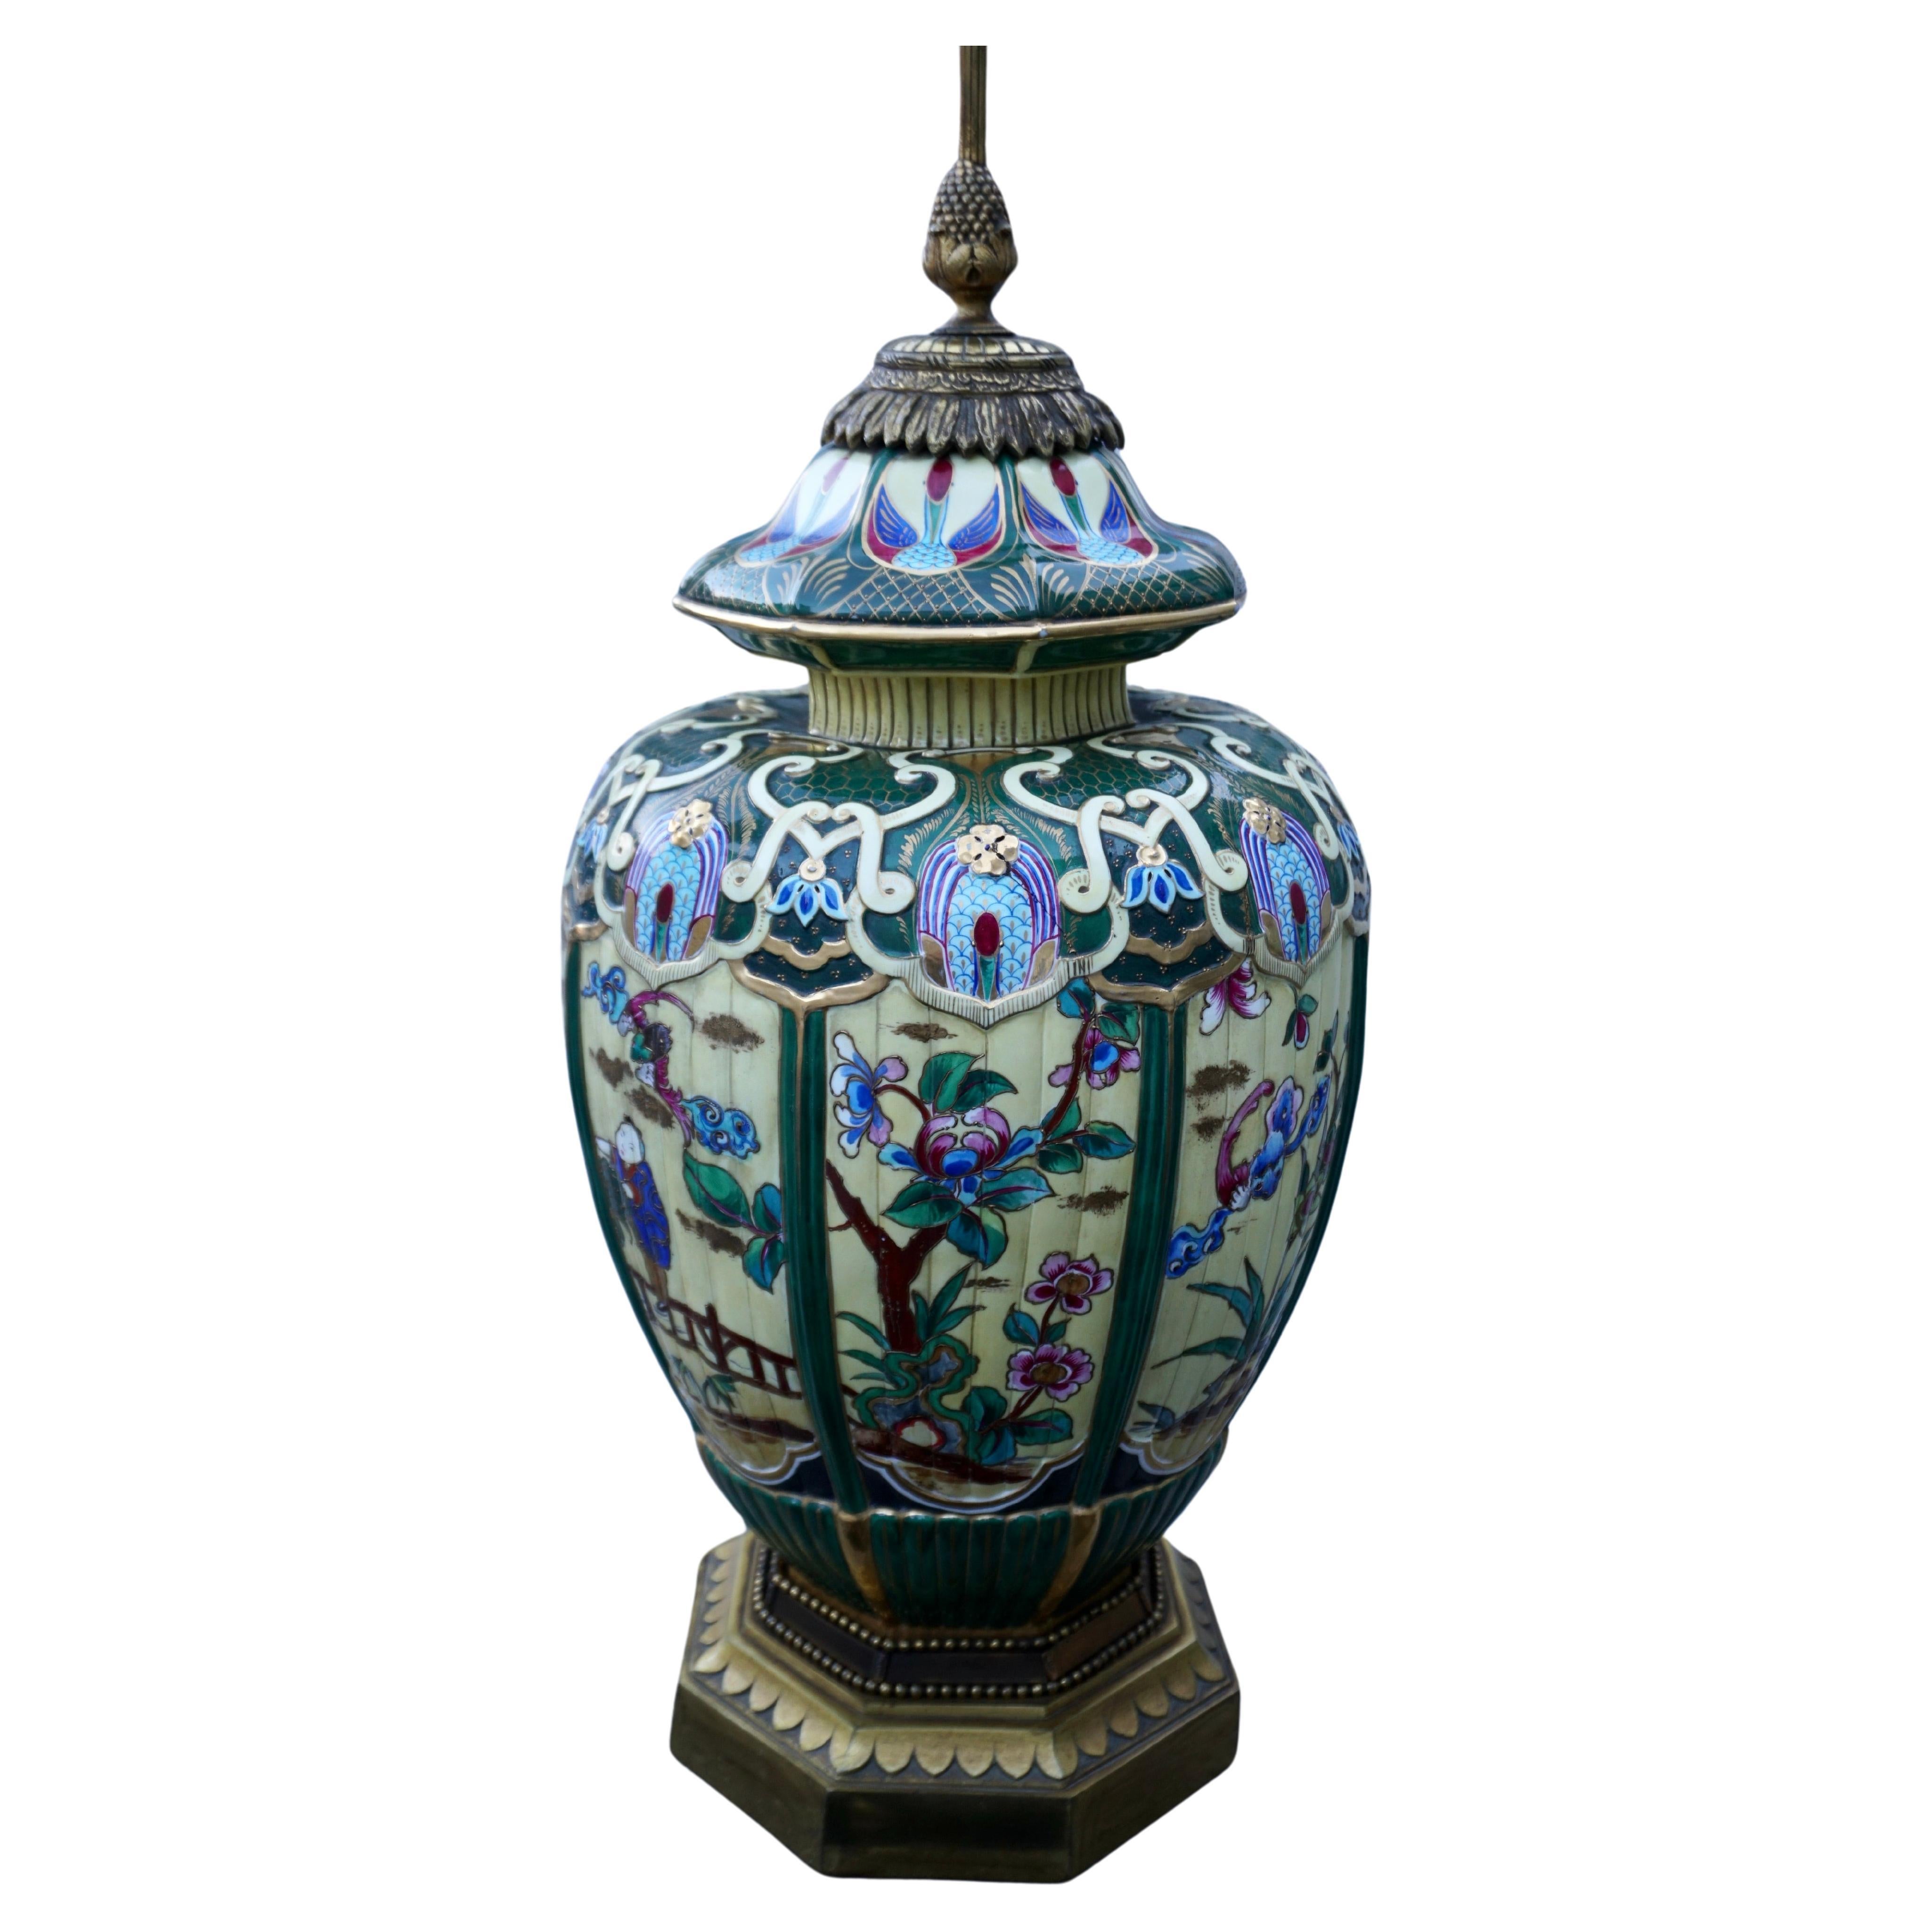 Vase japonais en faïence peint à la main, monté en lampe.

De forme ovoïde cannelée, peinte à l'imitation de l'émail cloisonné, avec des panneaux de personnages et d'animaux dans un jardin à l'intérieur de bordures cannelées, montée comme base de